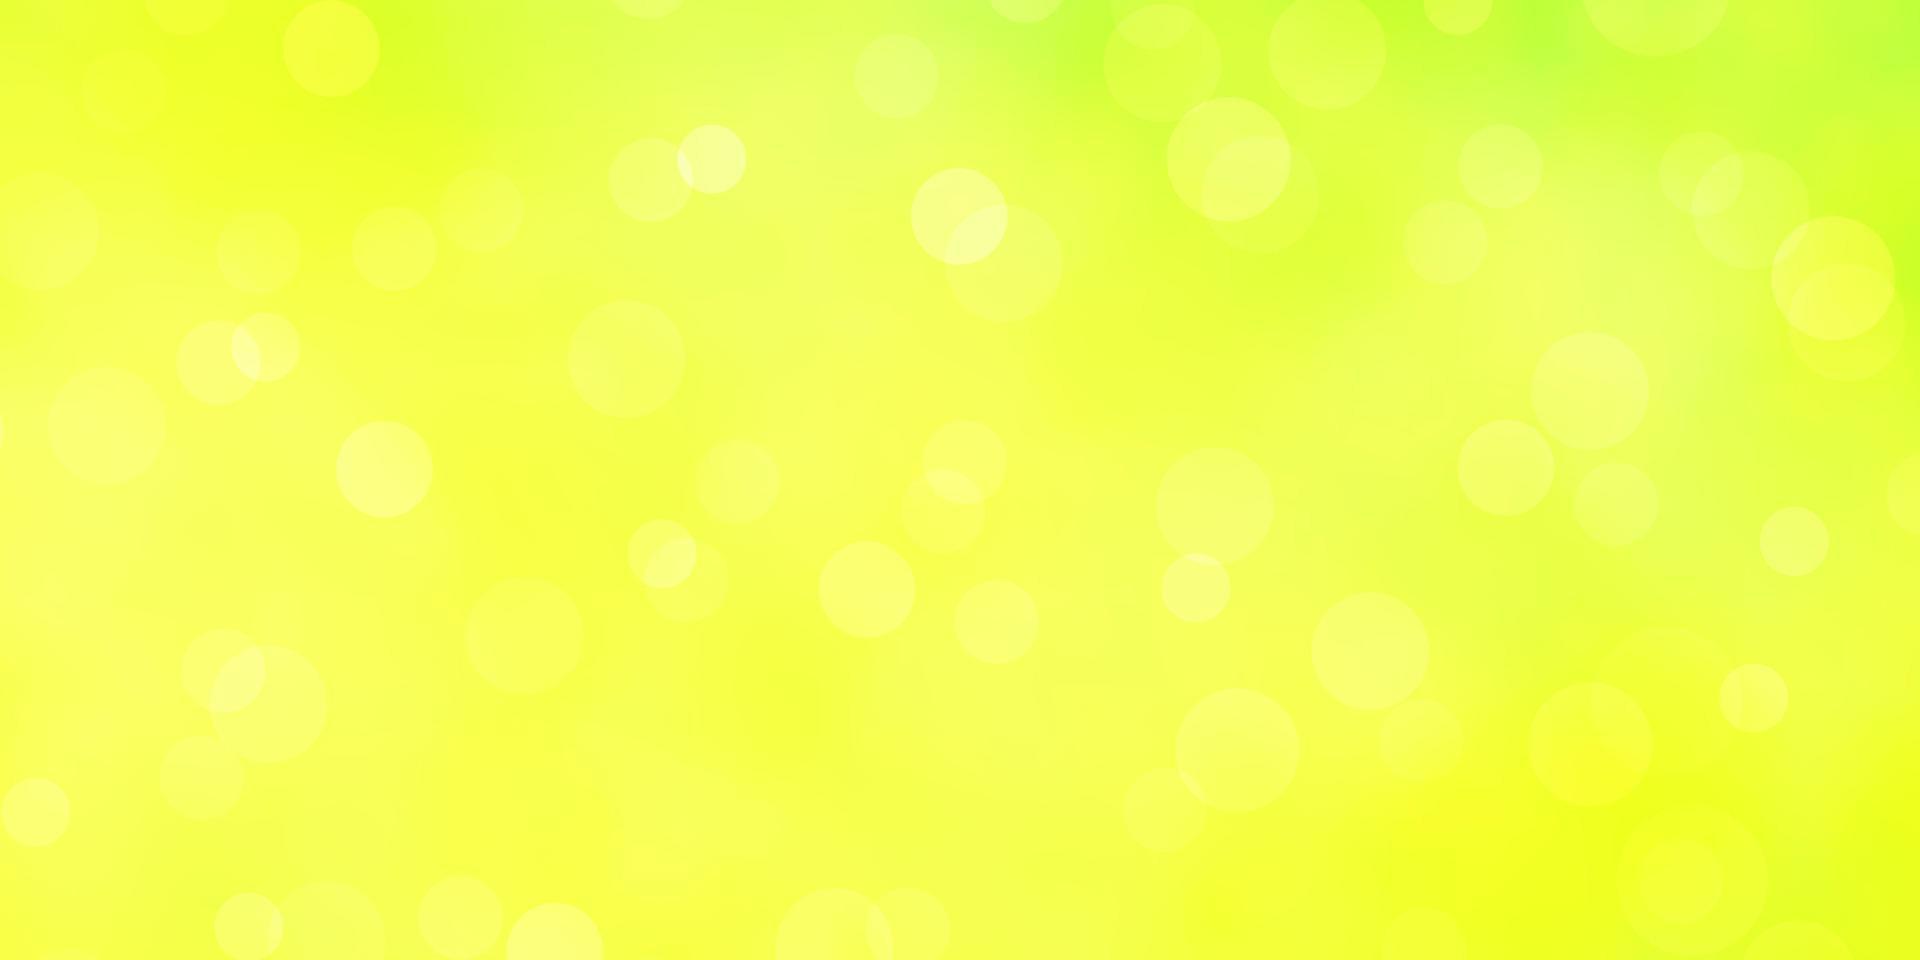 ljusgrön, gul vektorstruktur med skivor. vektor